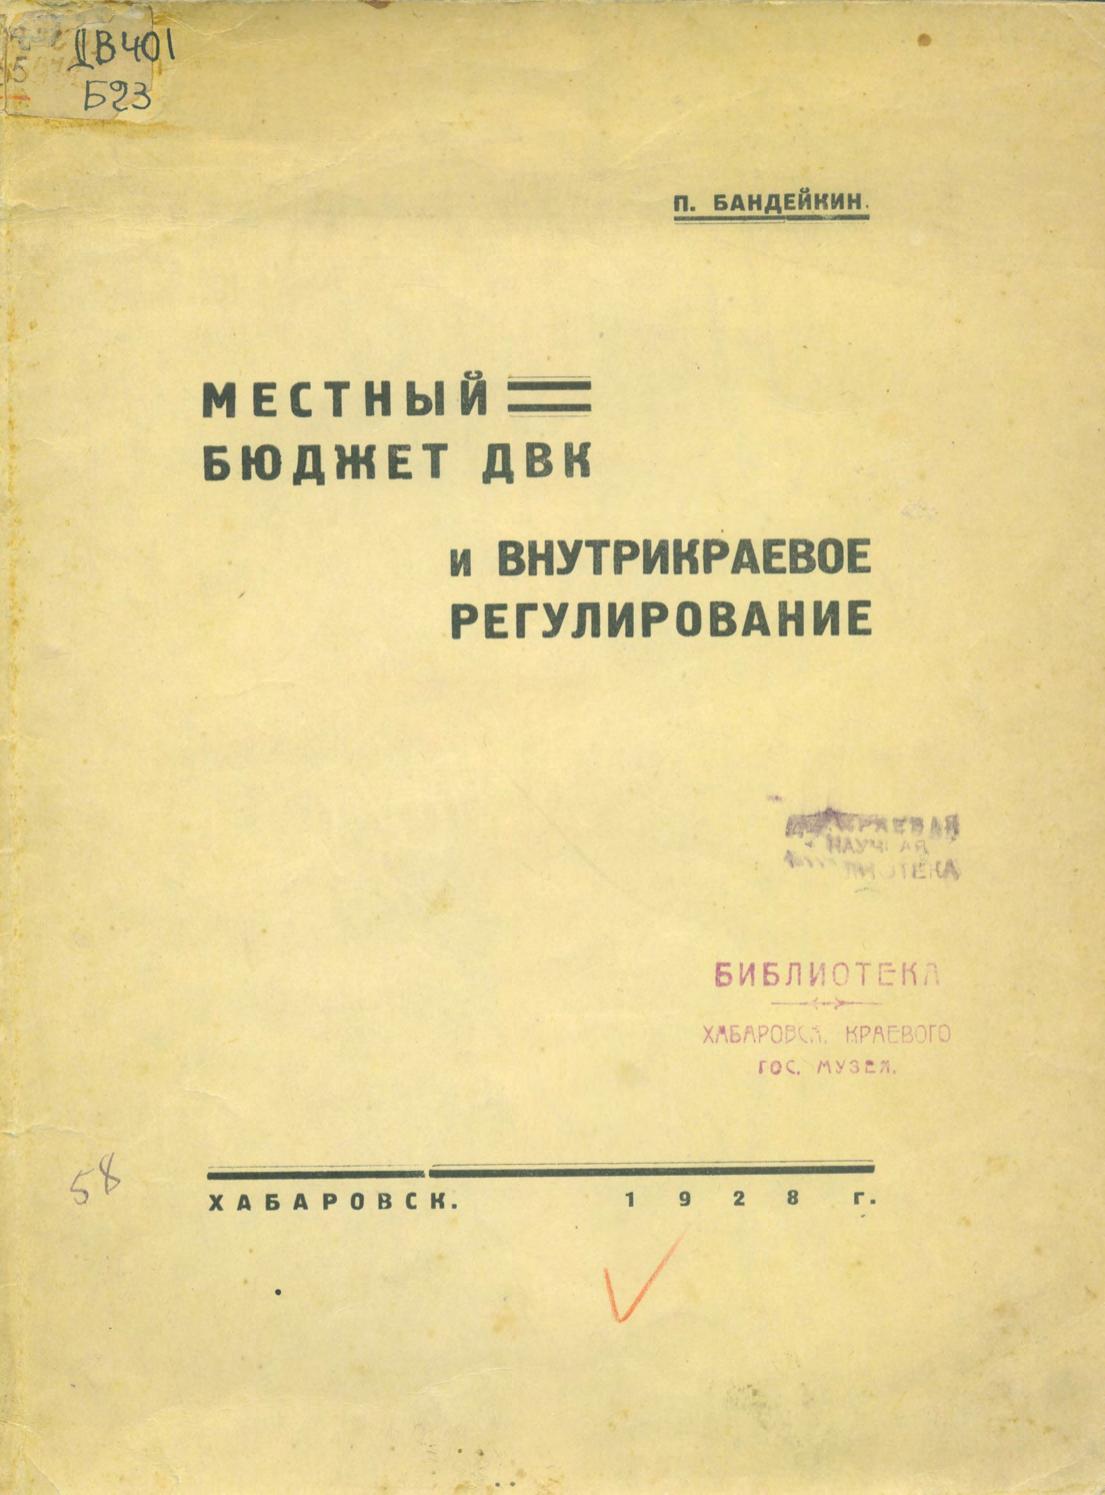 Бандейкин, П. Местный бюджет ДВК и внутрикраевое регулирование П. Бандейкин. – Хабаровск, 1928